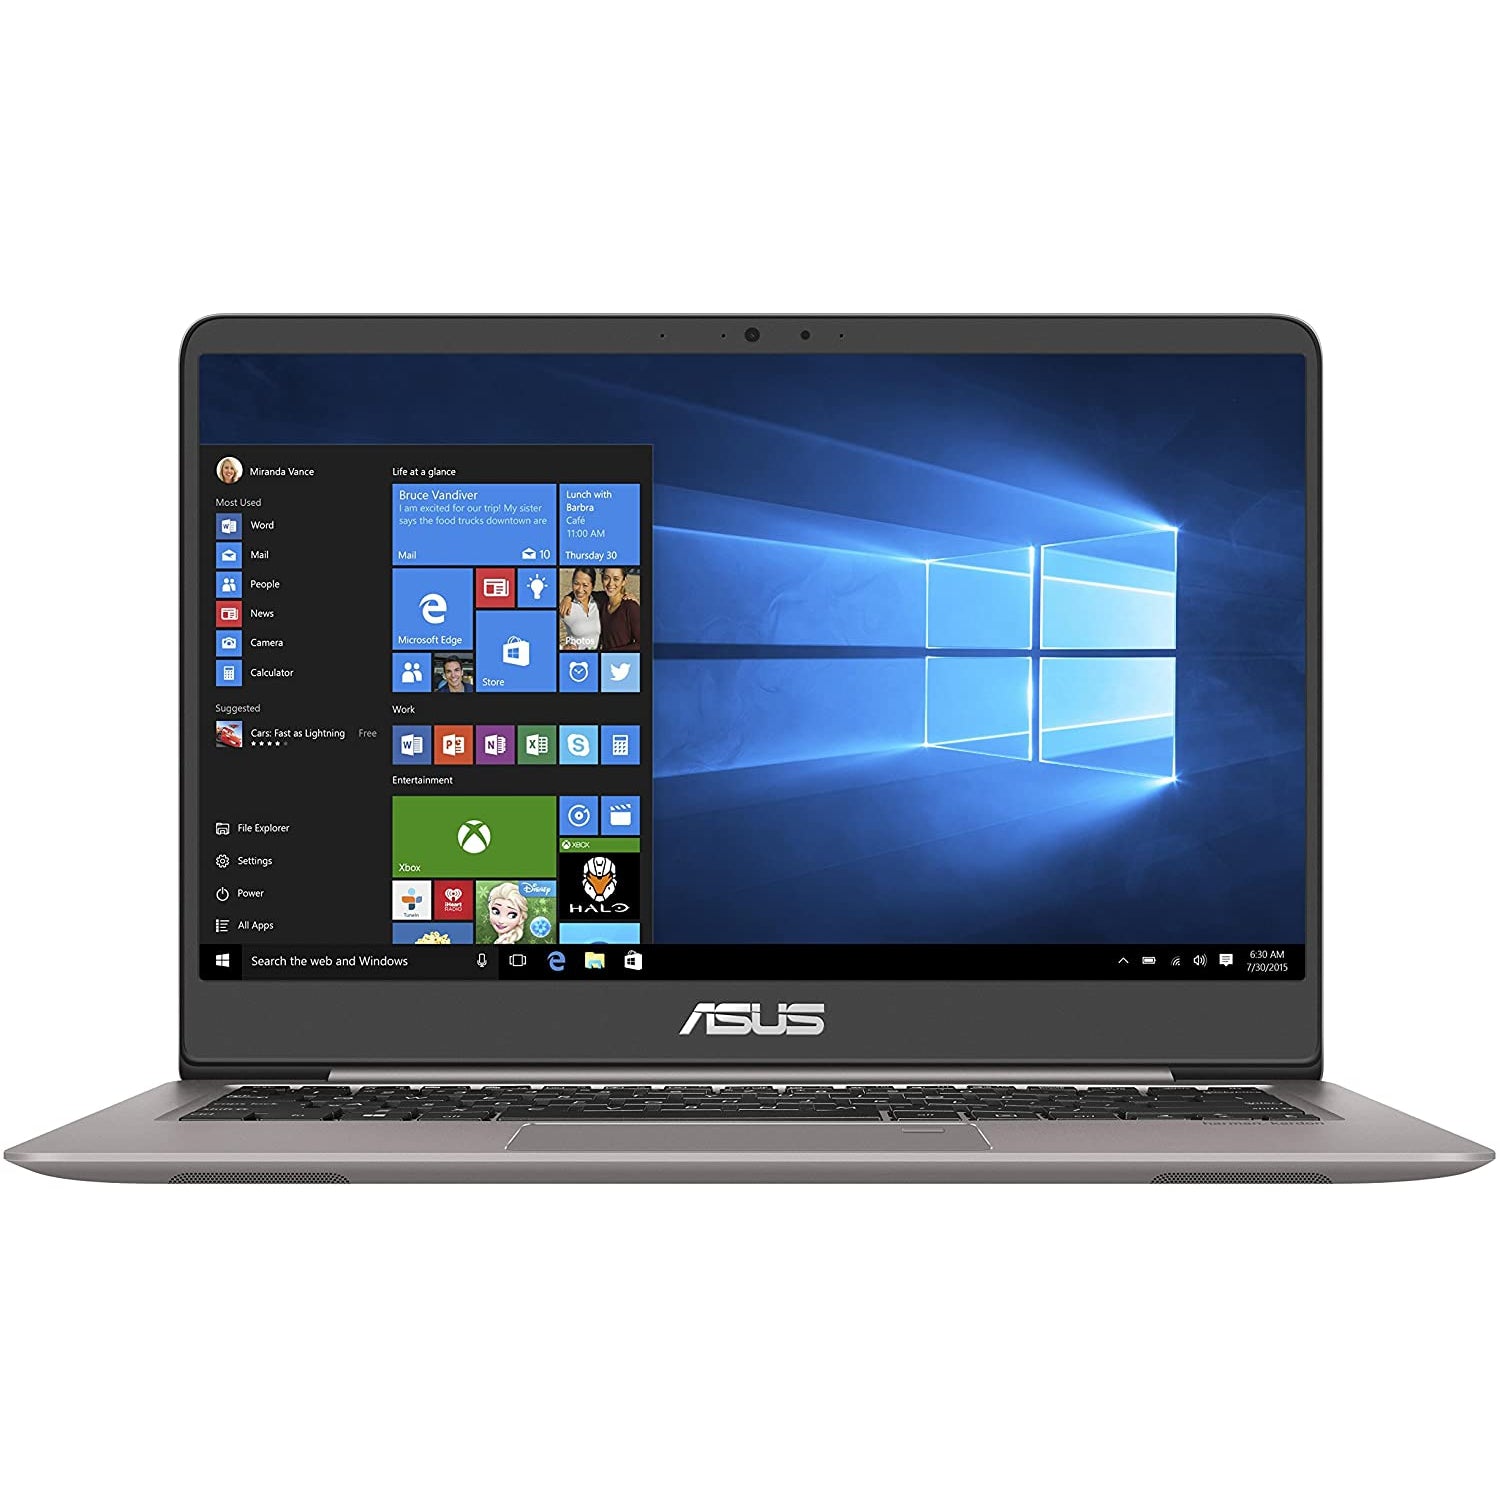 Asus ZenBook 14 UX410UA-GV027T - Intel Core i5-7200U, 8GB RAM, 256GB - Grey